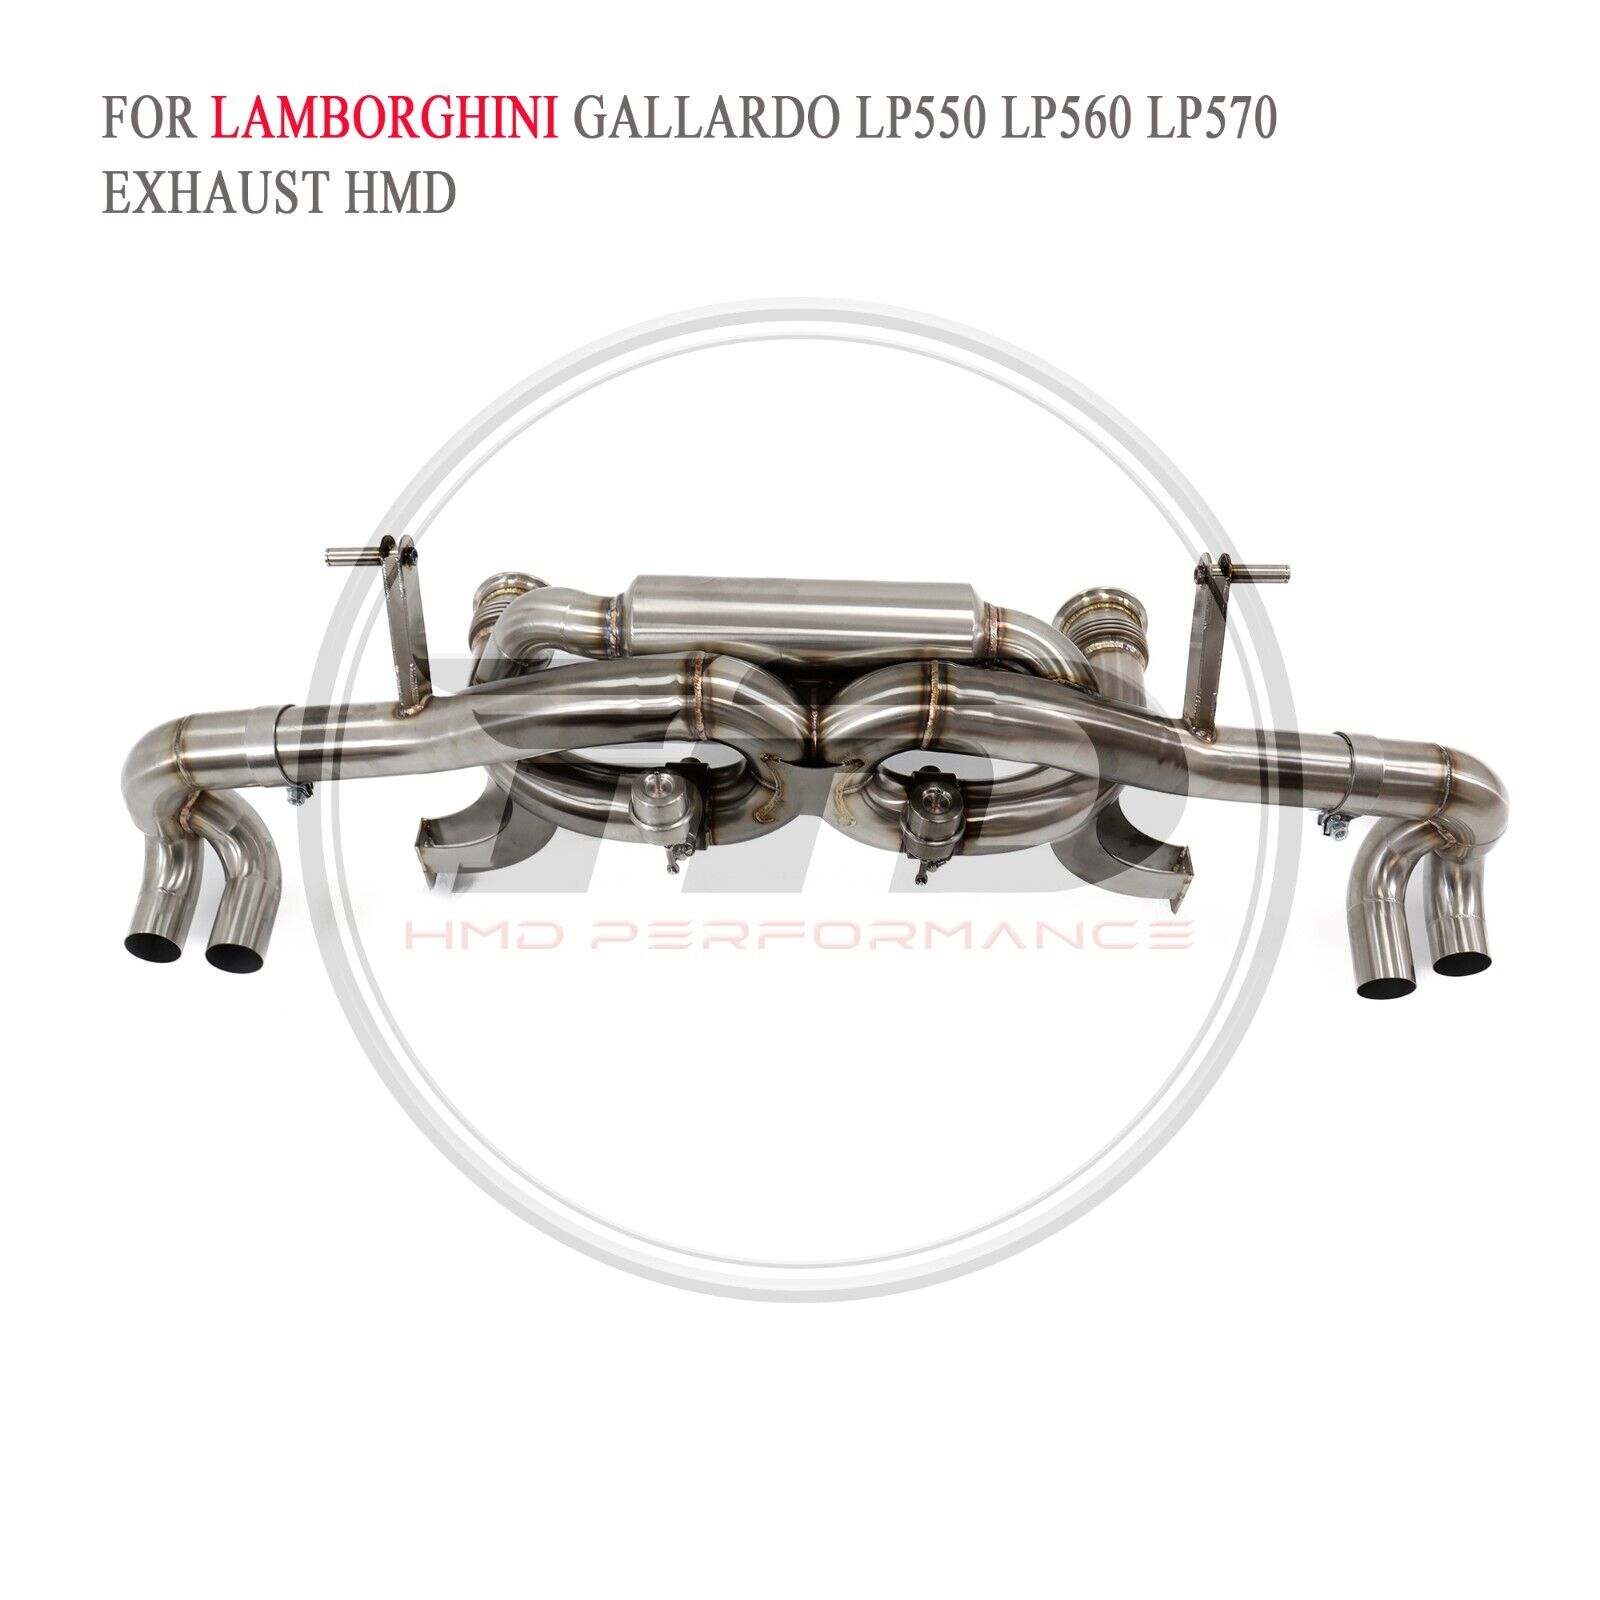 Exhaust pipe for Lamborghini Gallardo LP550 LP560 LP570